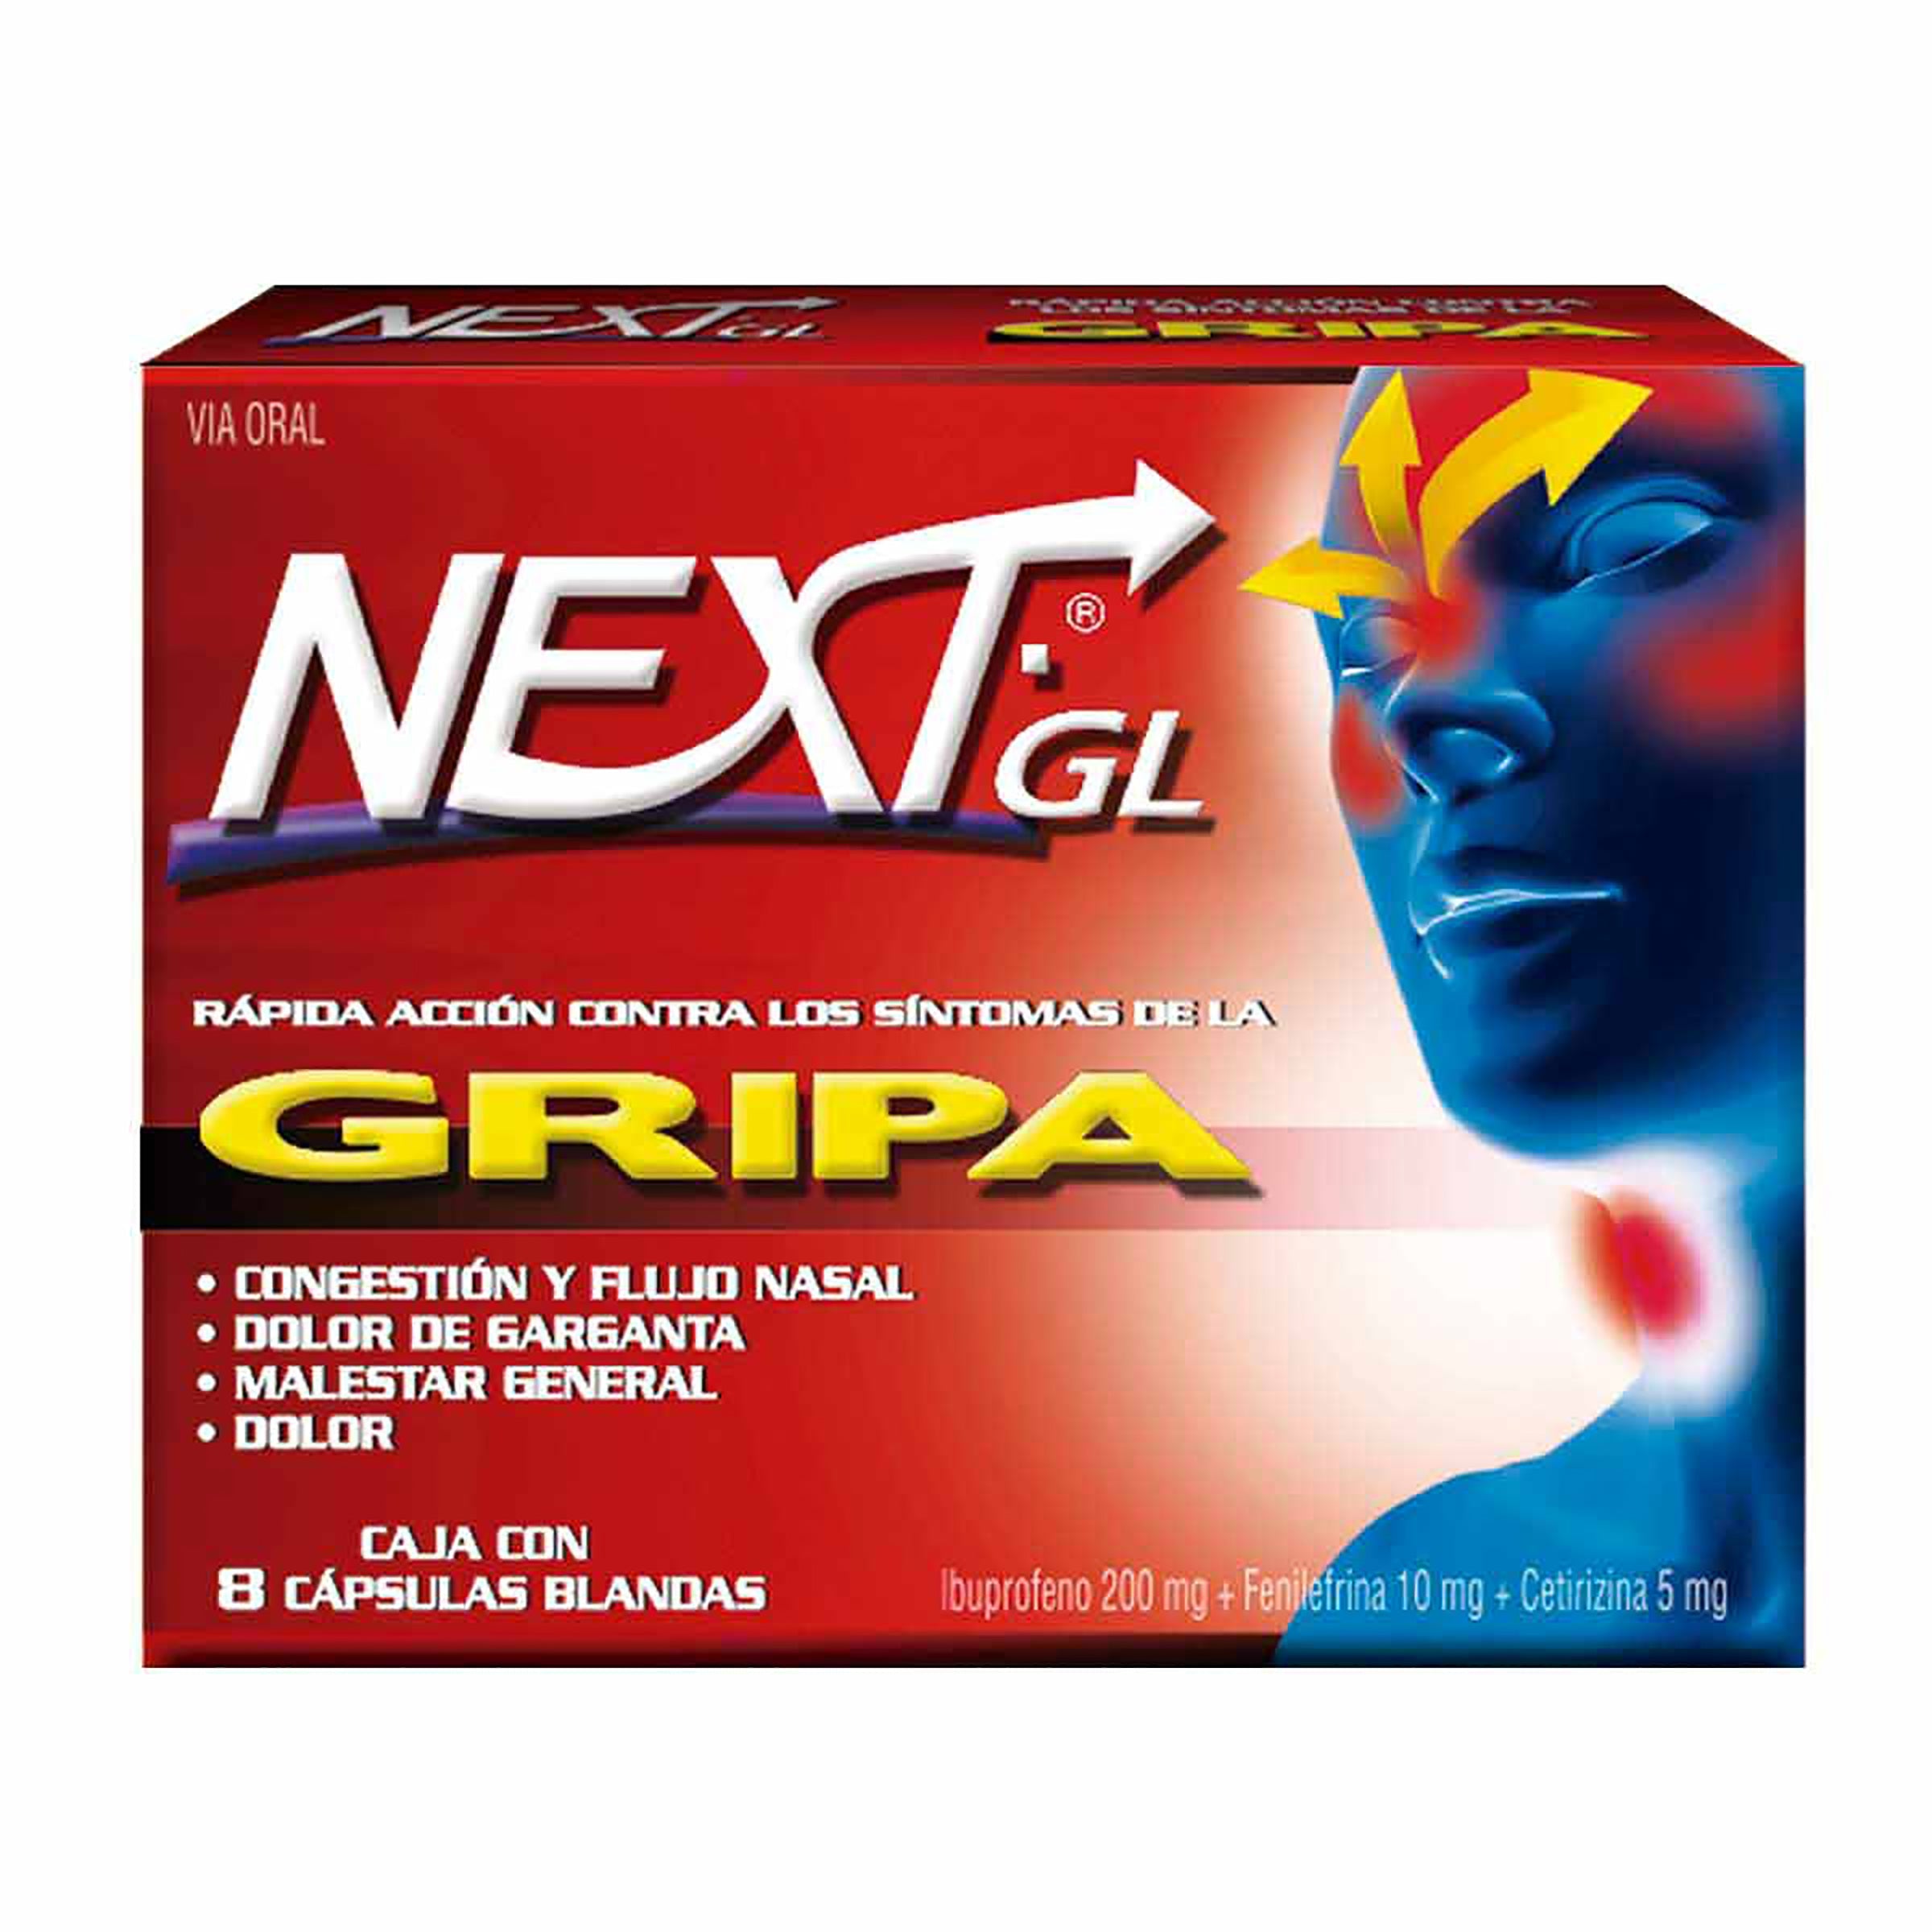 NEXT GL GRIPA 8 CAPSULAS BLANDAS - Uno A Droguerias